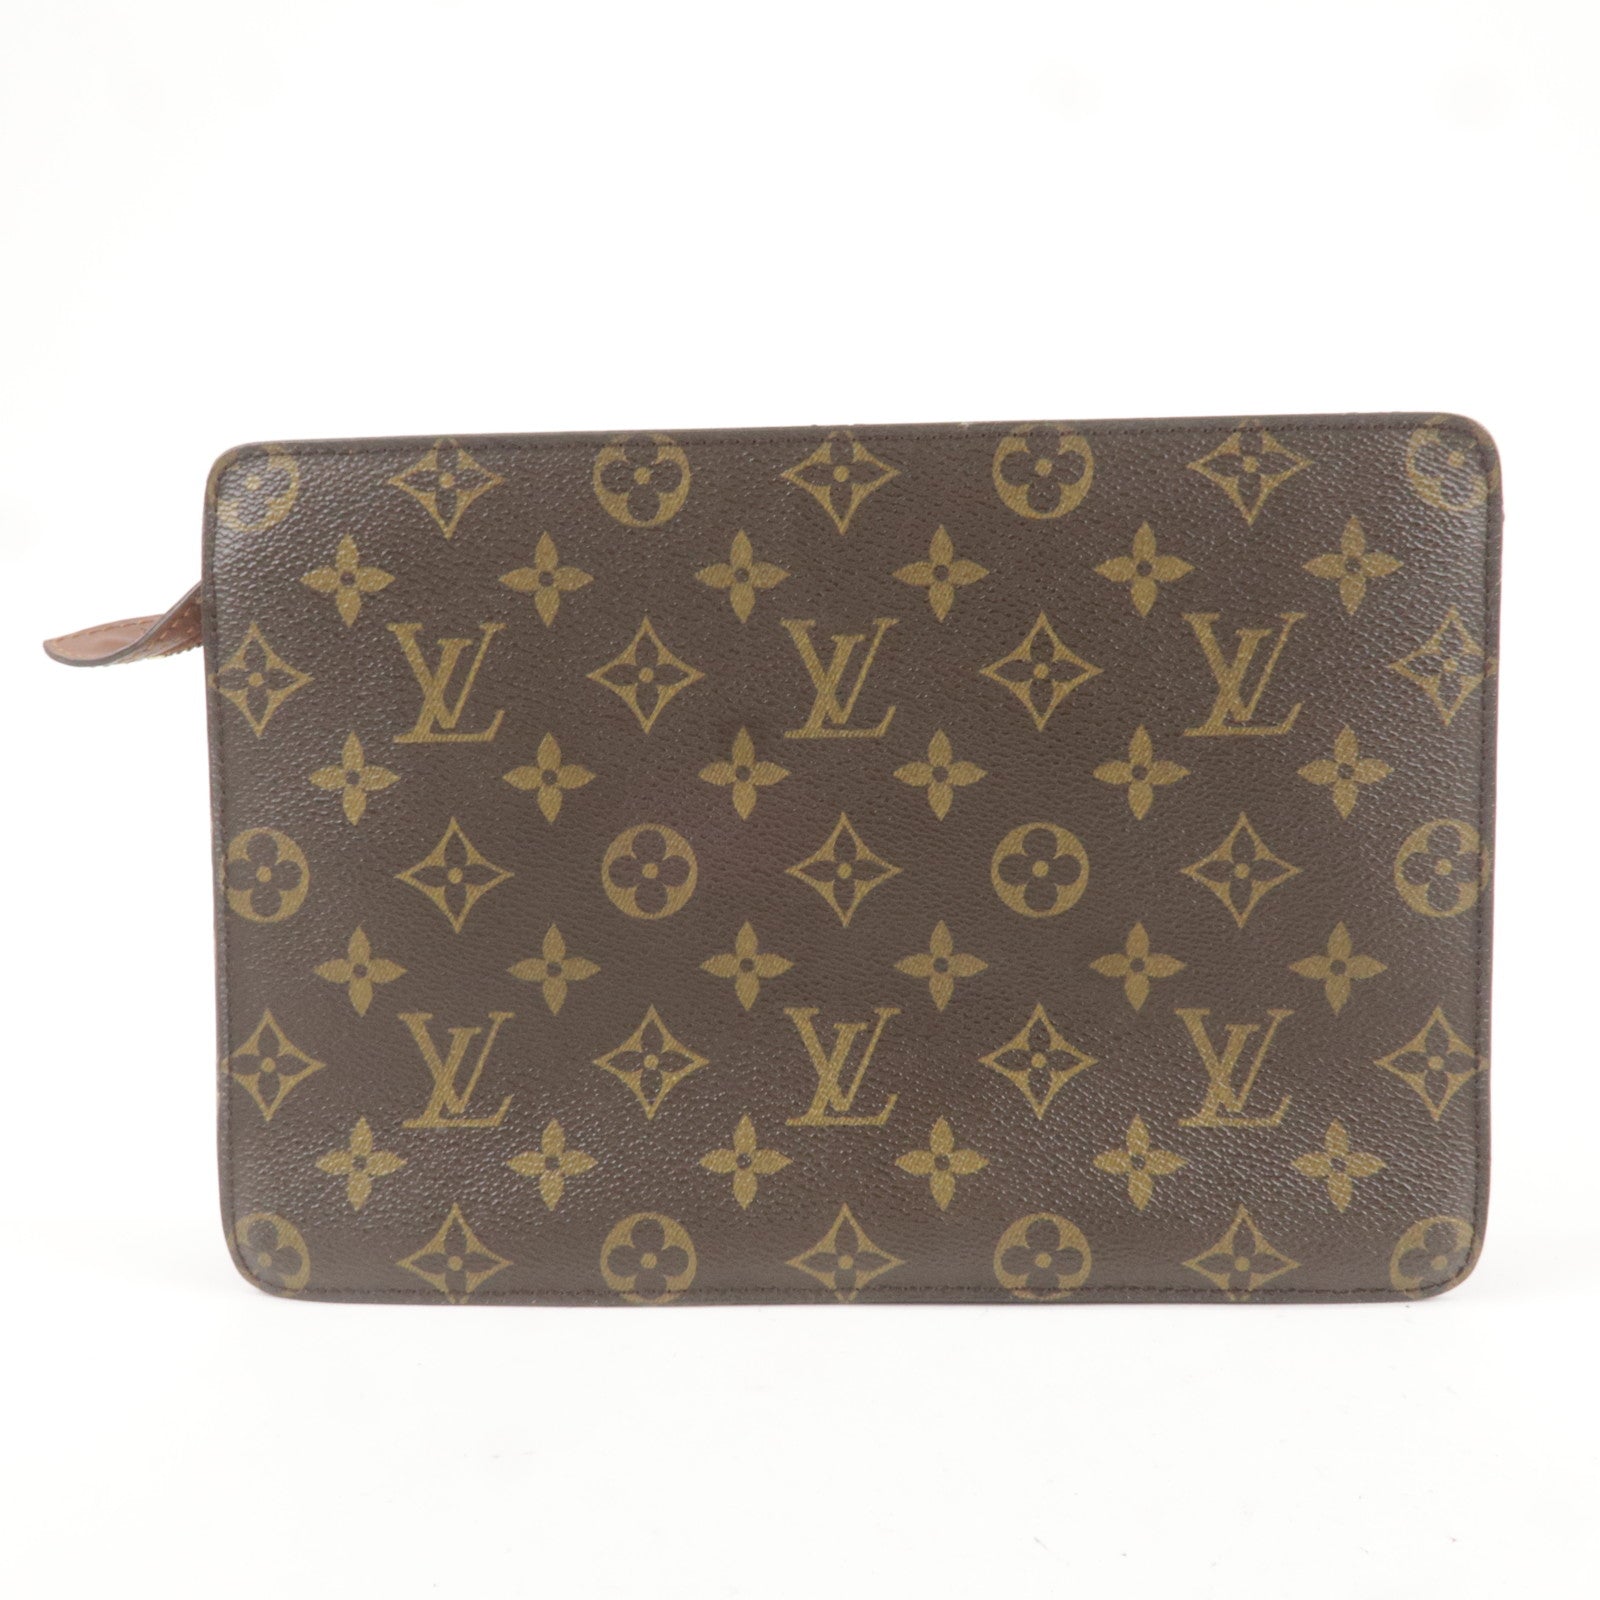 Vuitton - Bag - Homme - Pochette - Monogram - Louis - Clutch